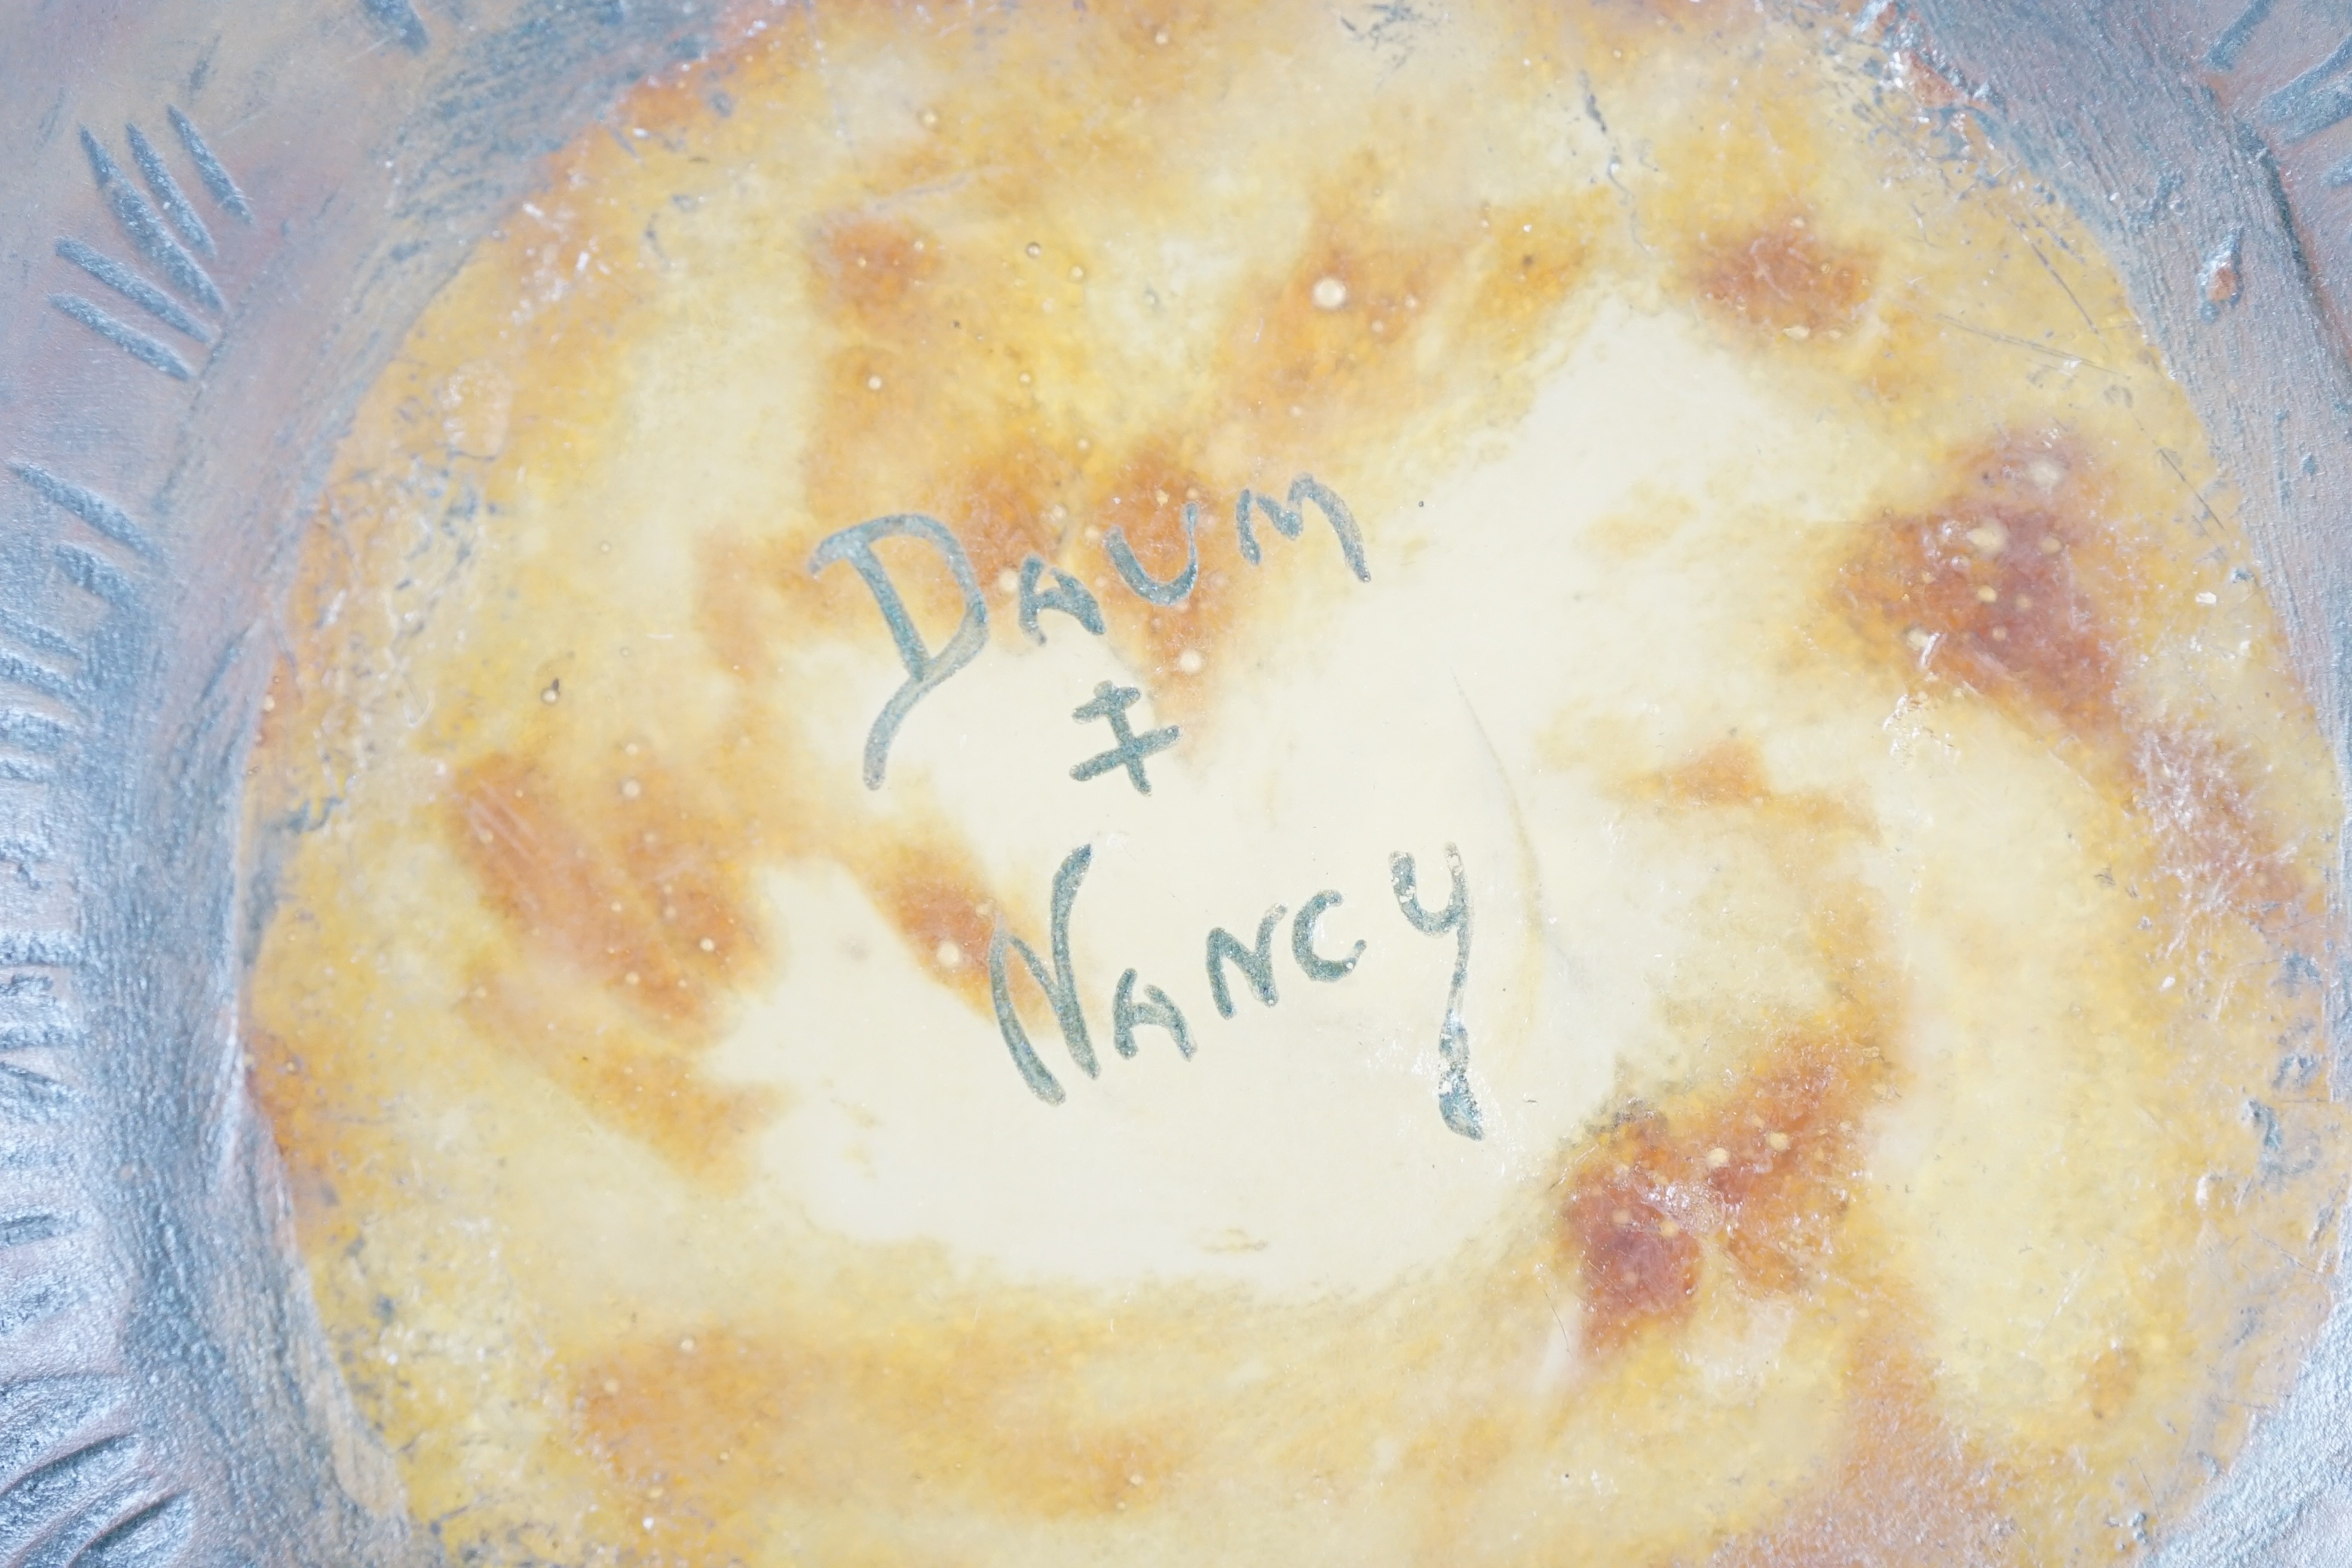 A Daum ‘’Les champignons’’ cameo glass bowl, 9cm high, 12.5cm diameter